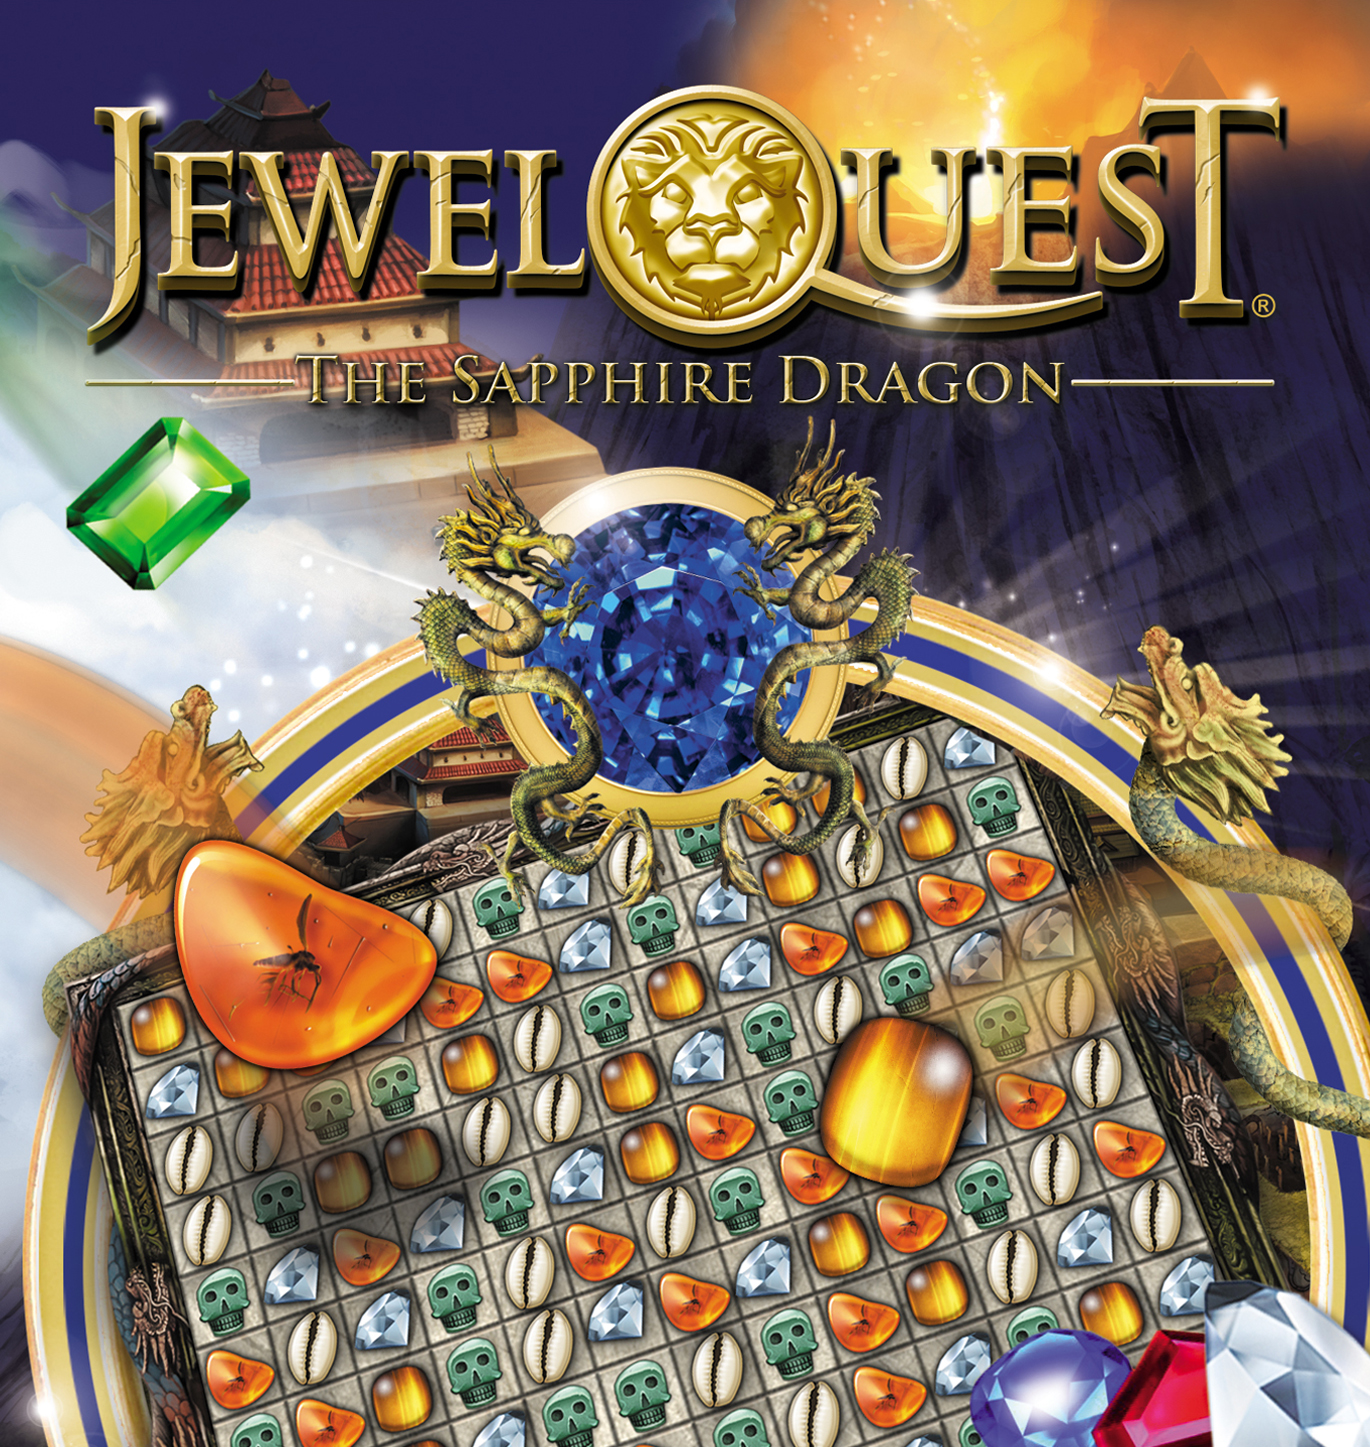 Jewel quest sapphire dragon